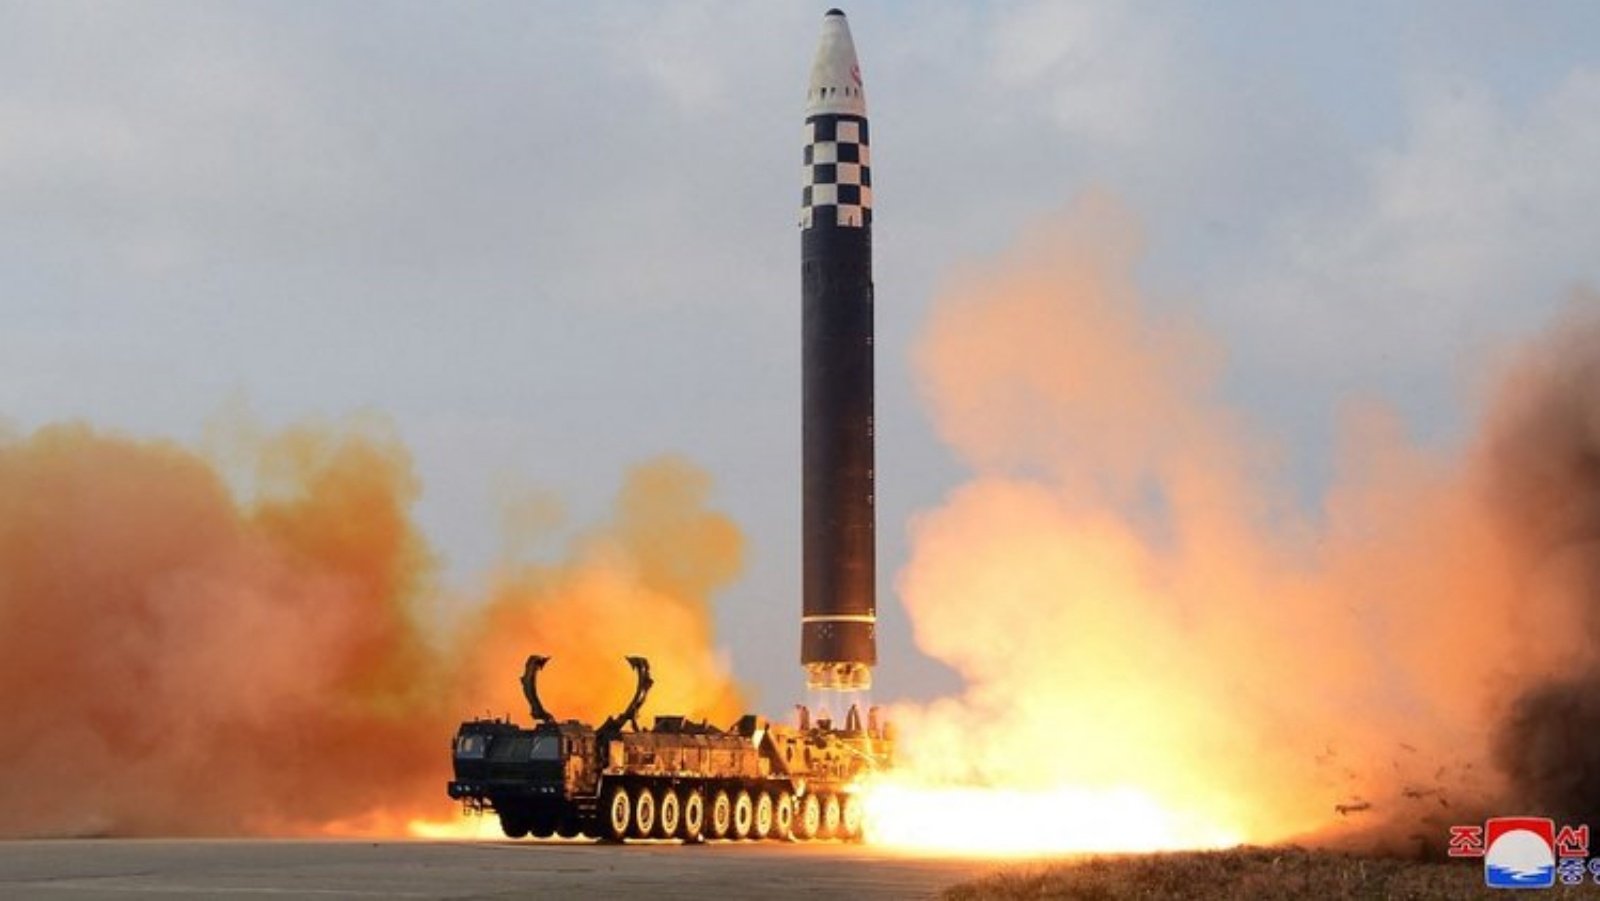 كوريا الشمالية تطلق صاروخاً بالستياً غير محدد 